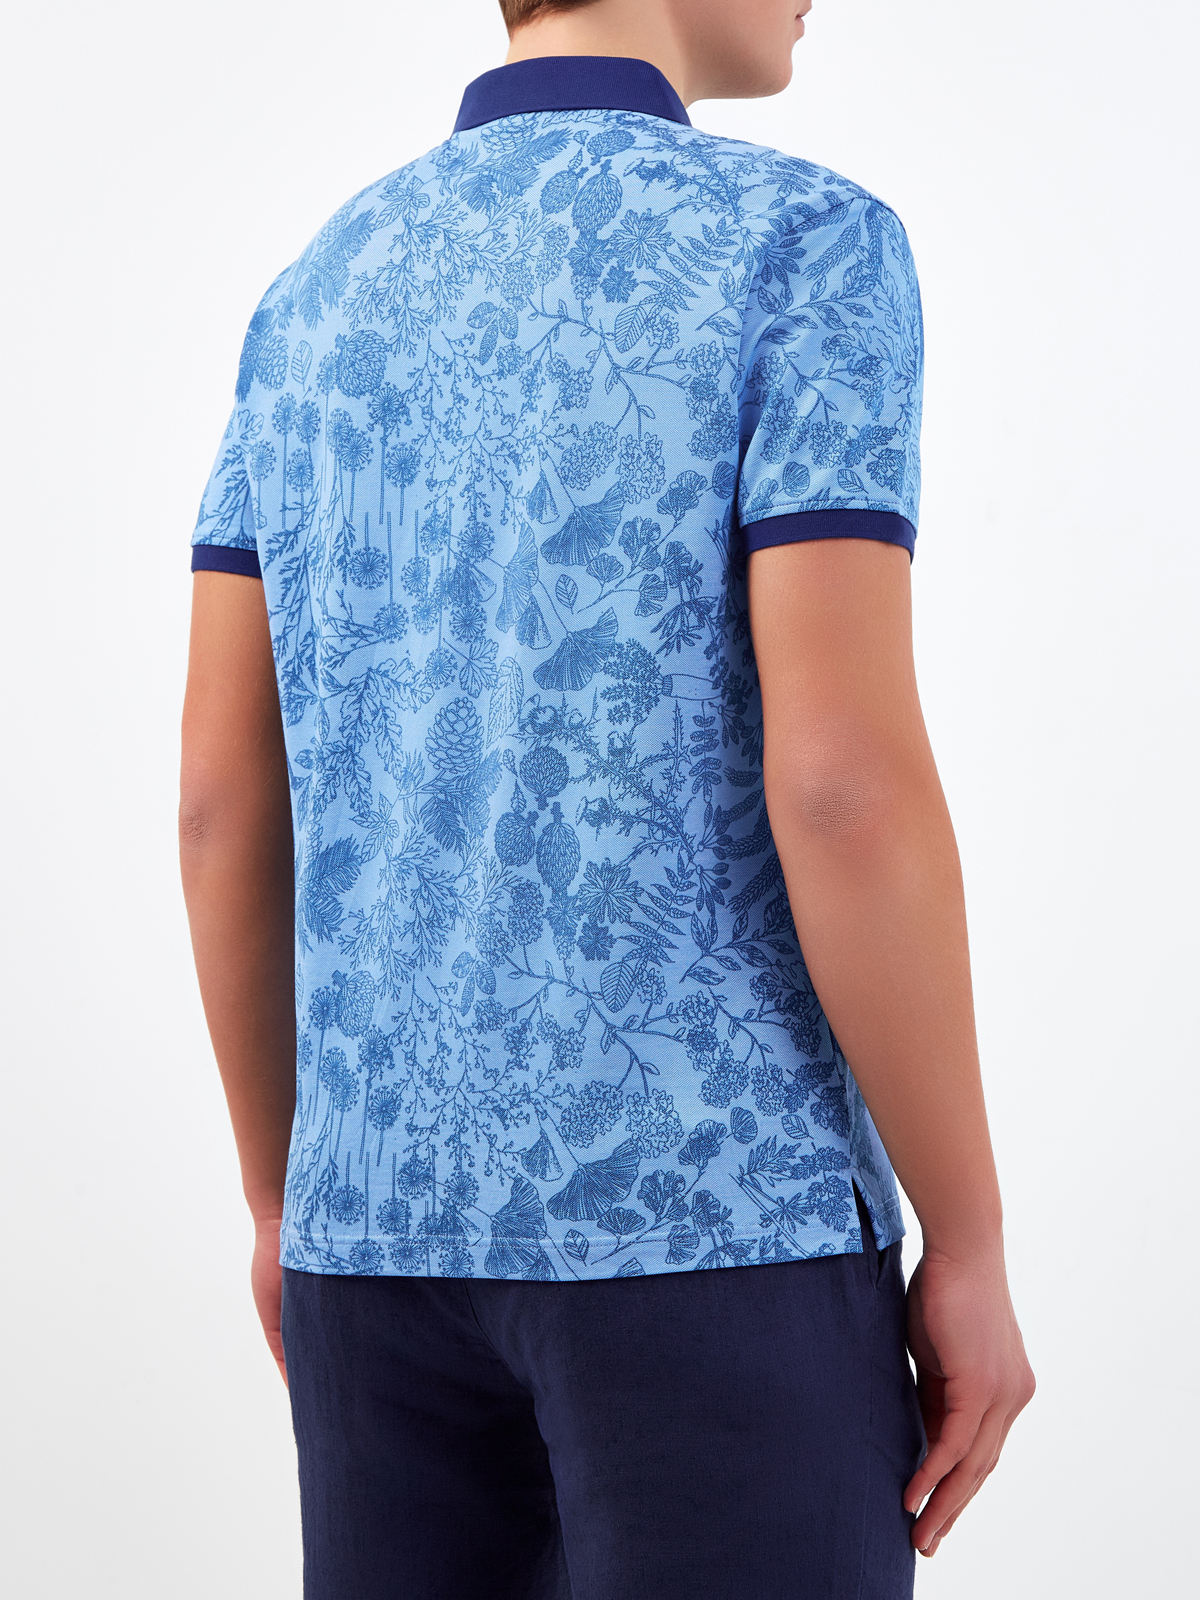 Хлопковая футболка-поло с набивным принтом CUDGI, цвет синий, размер 50;52;54;56;48 - фото 4